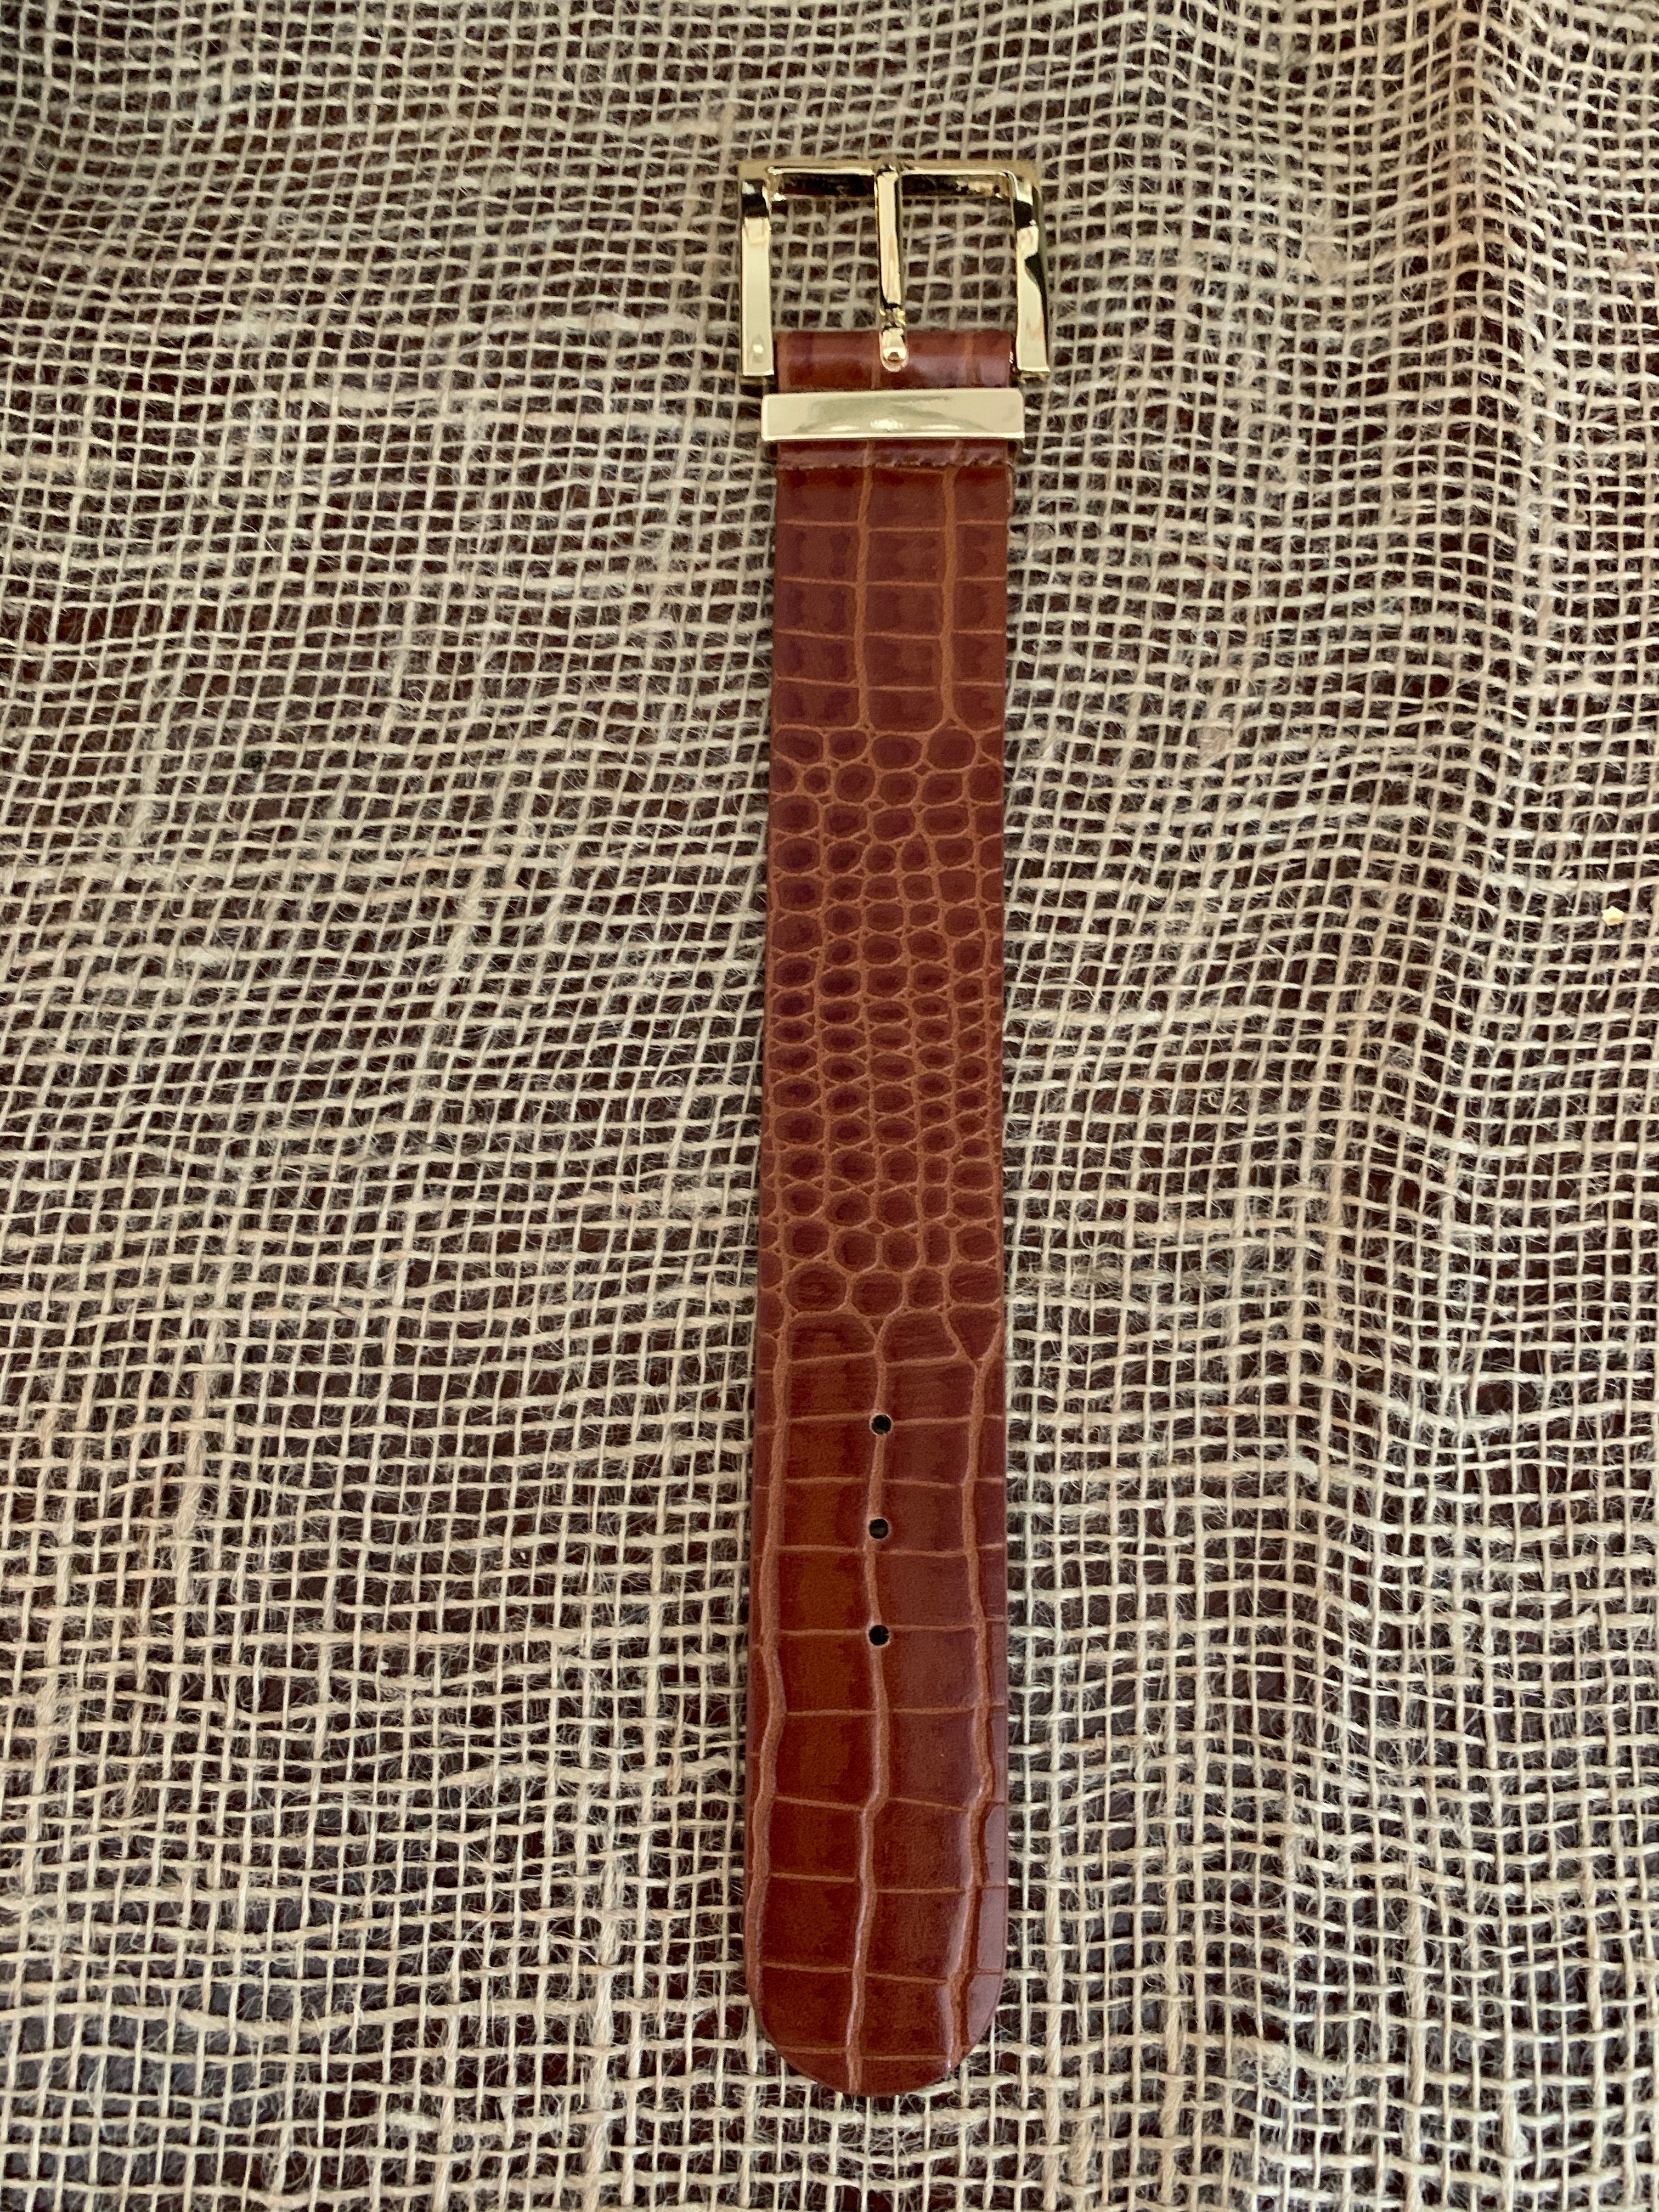 Alligator print brown leather belt bracelet with gold buckle fastener